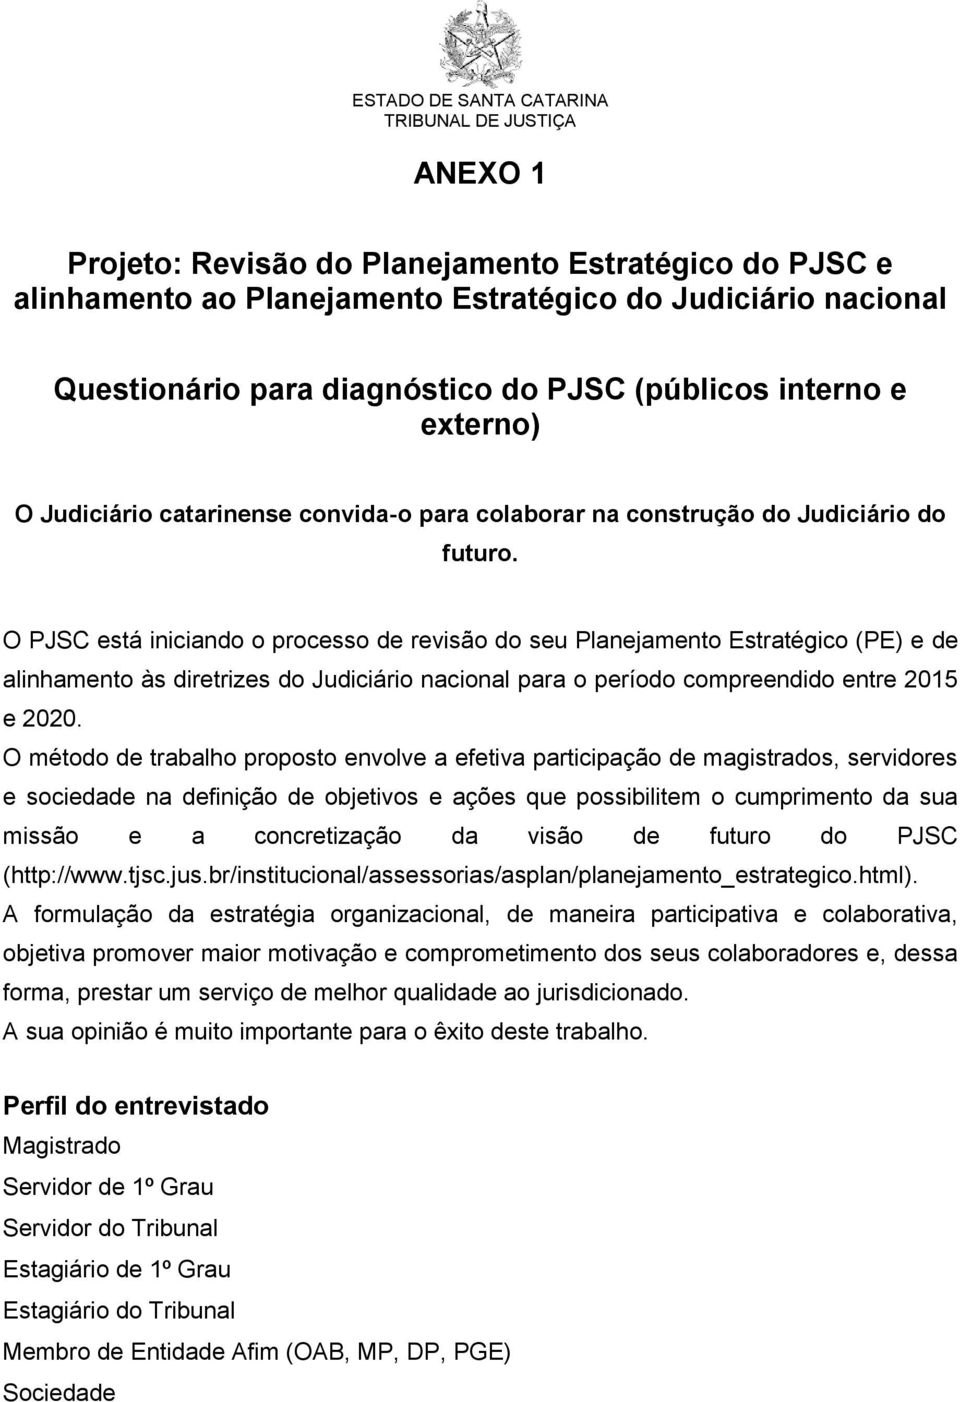 O PJSC está iniciando o processo de revisão do seu Planejamento Estratégico (PE) e de alinhamento às diretrizes do Judiciário nacional para o período compreendido entre 2015 e 2020.